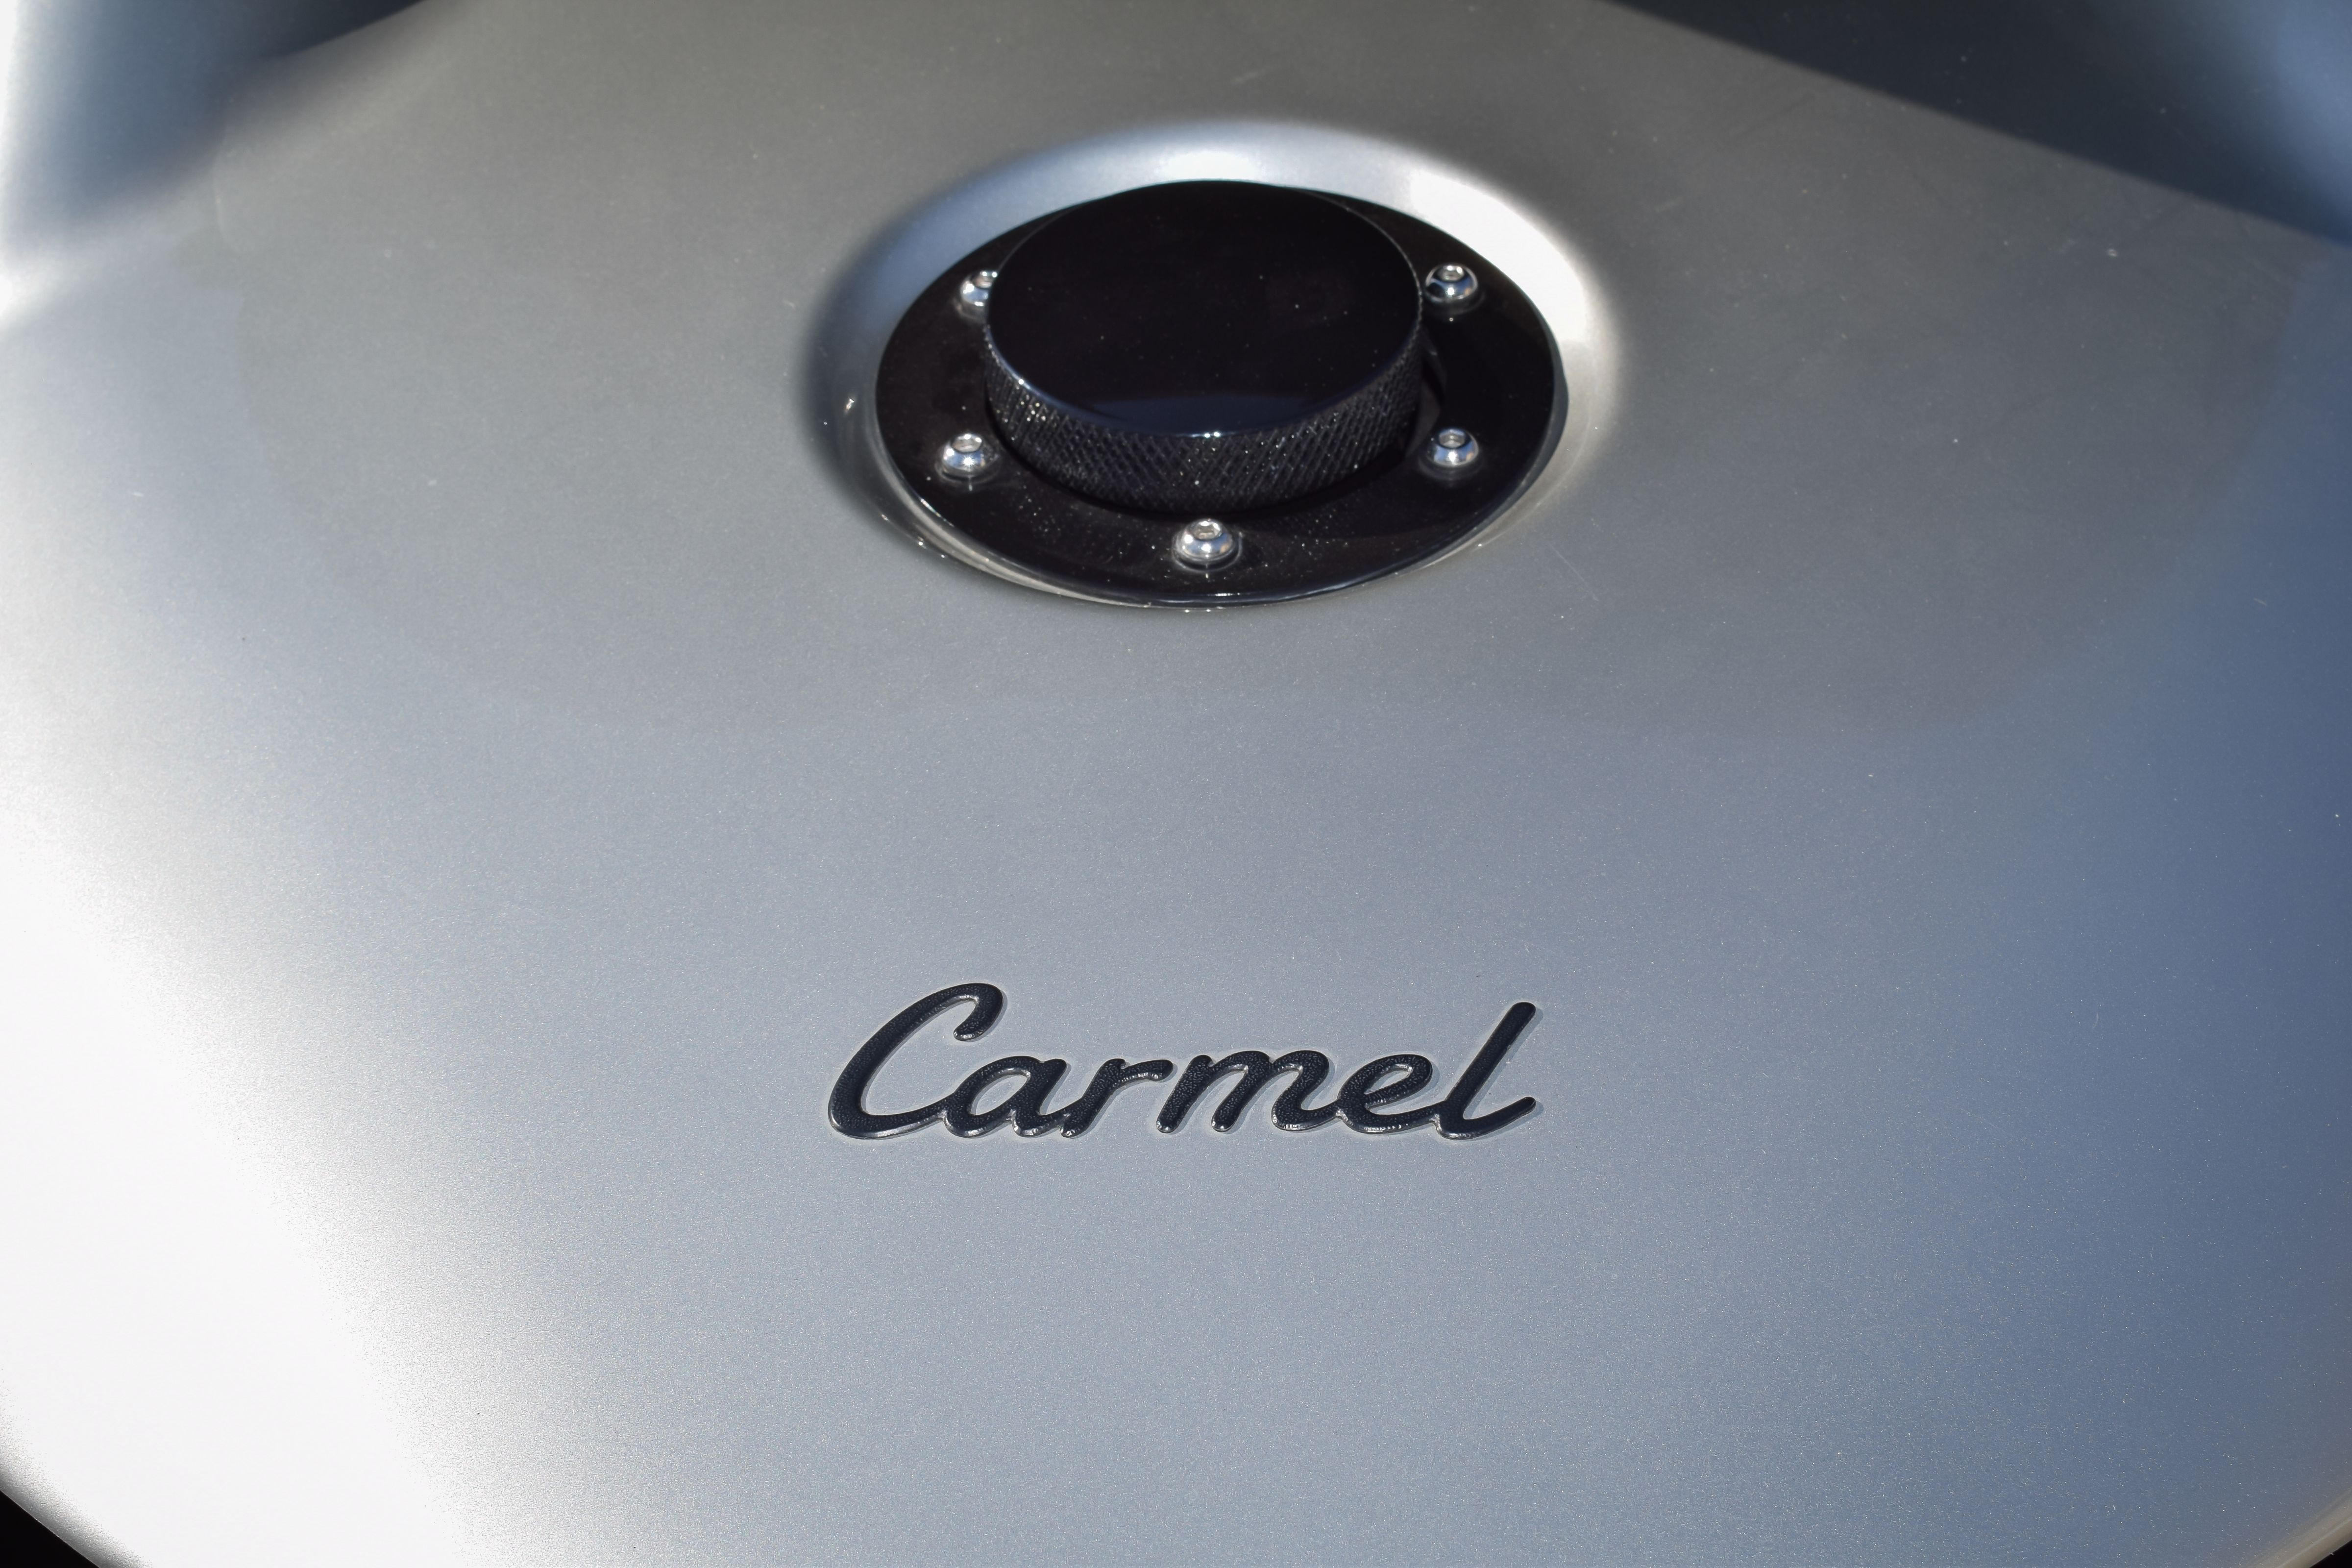 1k-Mile 2020 Vanderhall Carmel GT